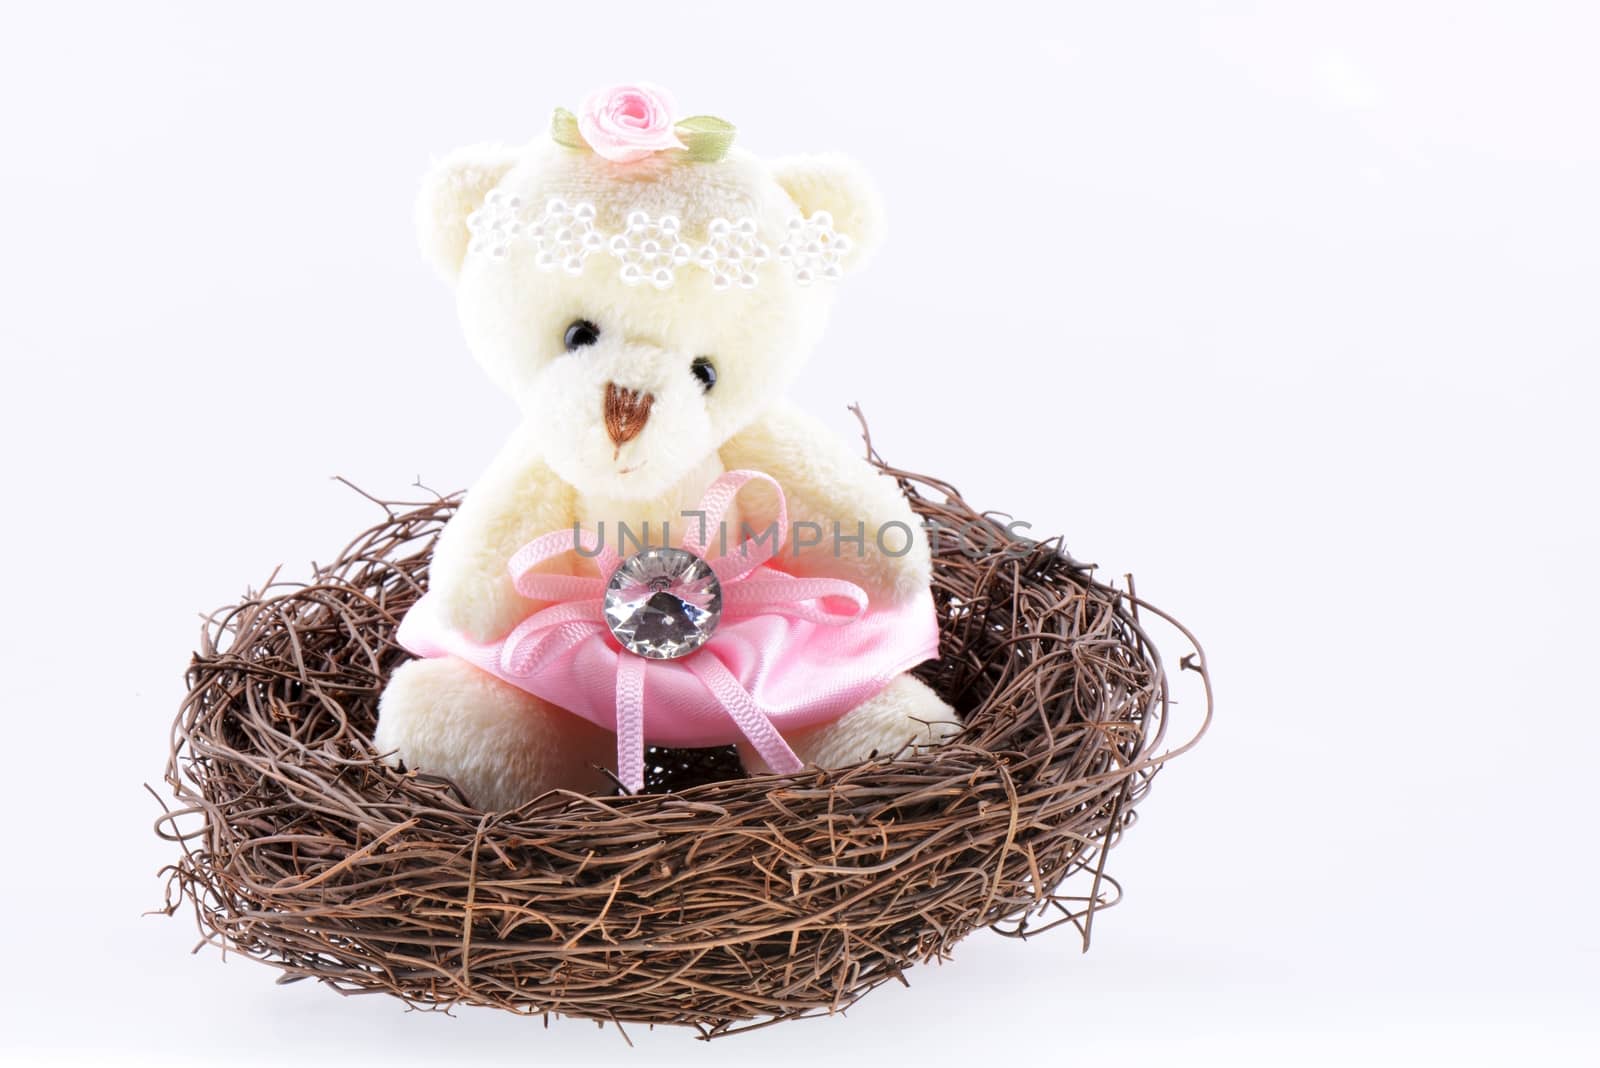 Nest with a Teddy Bear by bbbar